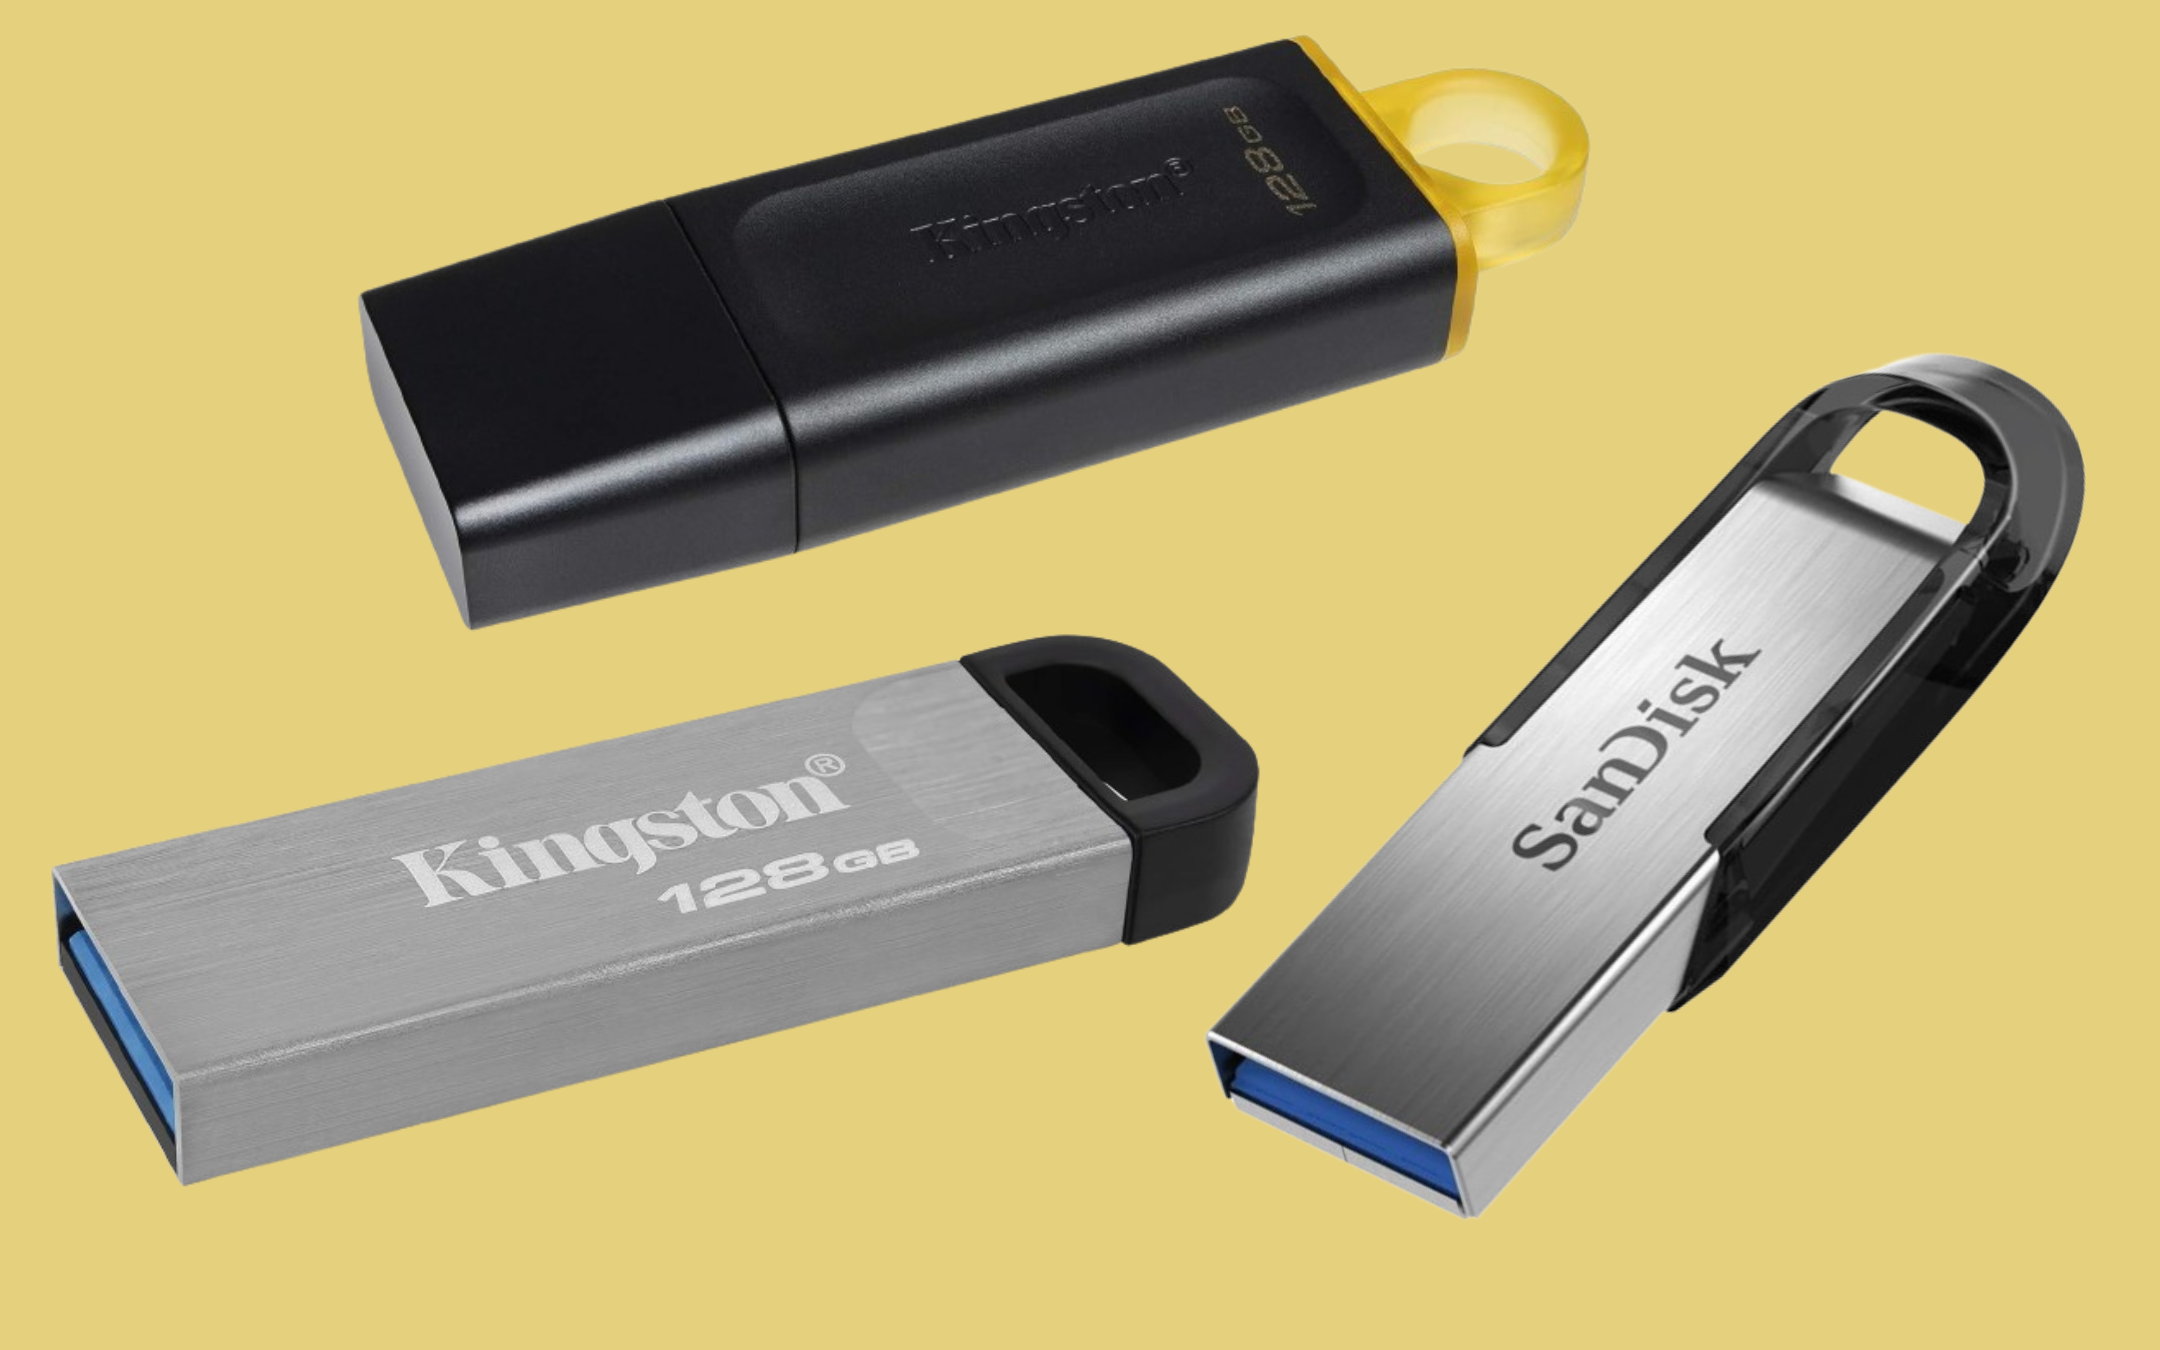 Chiavetta USB per smartphone e PC da 64GB Colore giallo